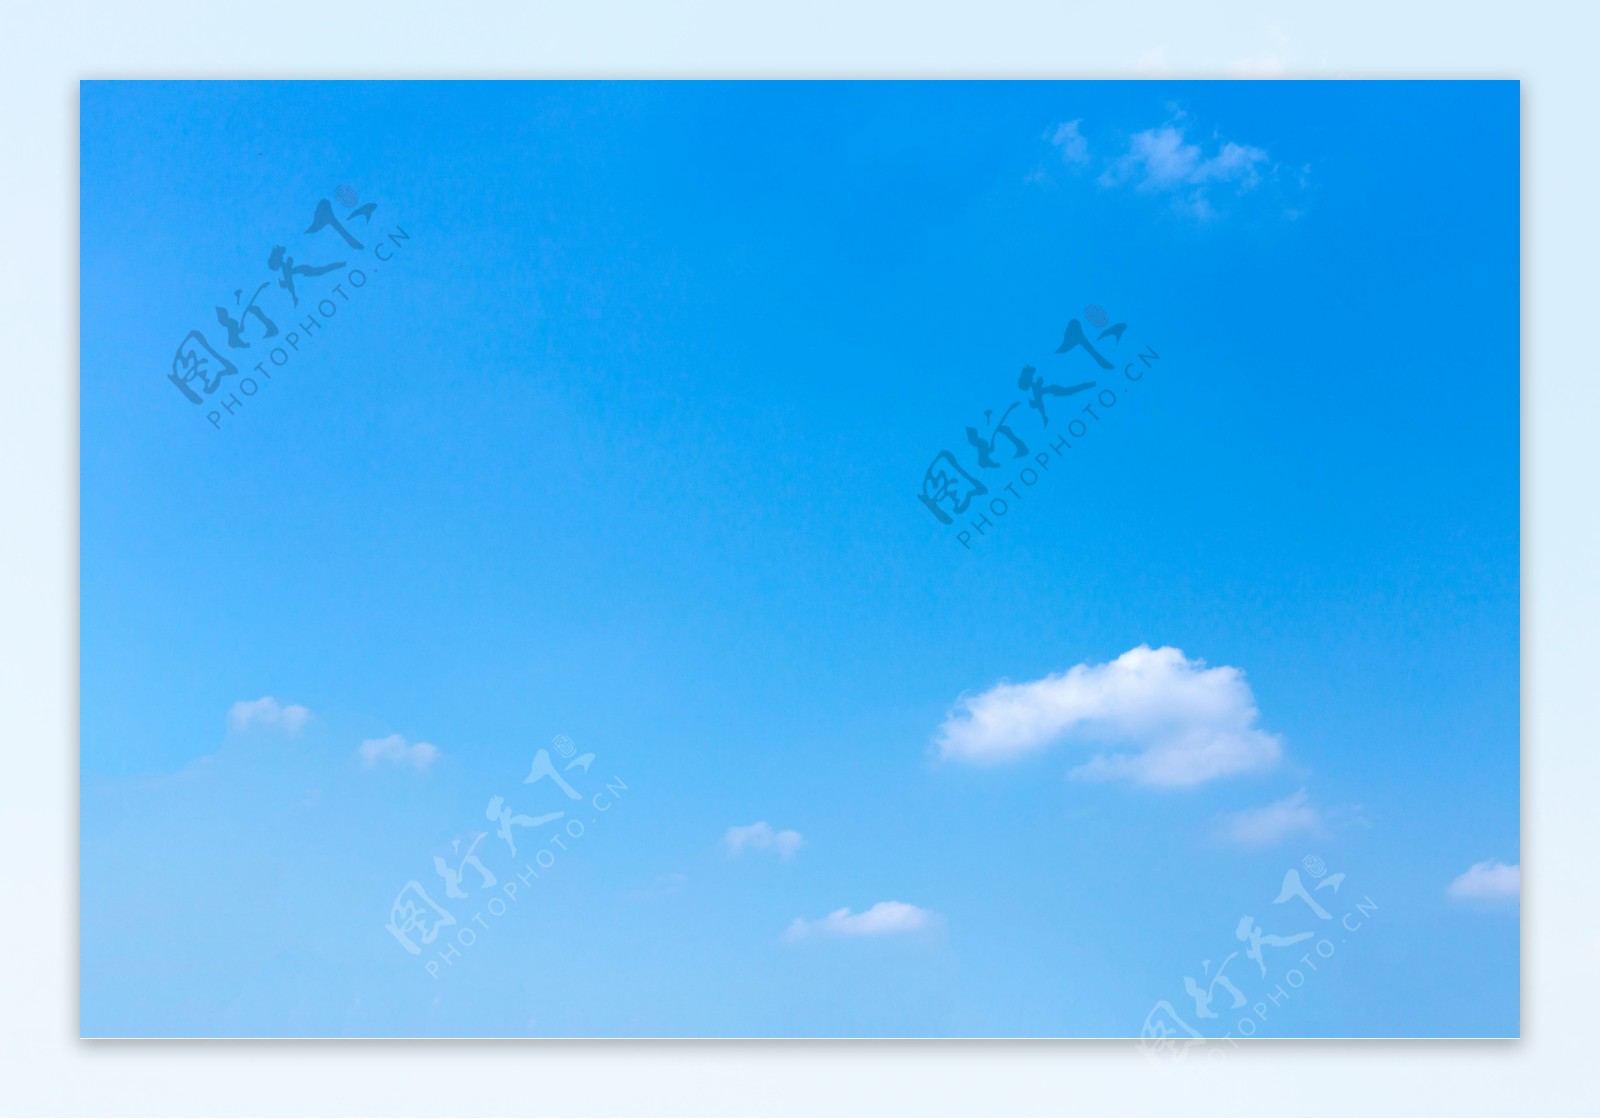 蓝天白云背景素材壁纸